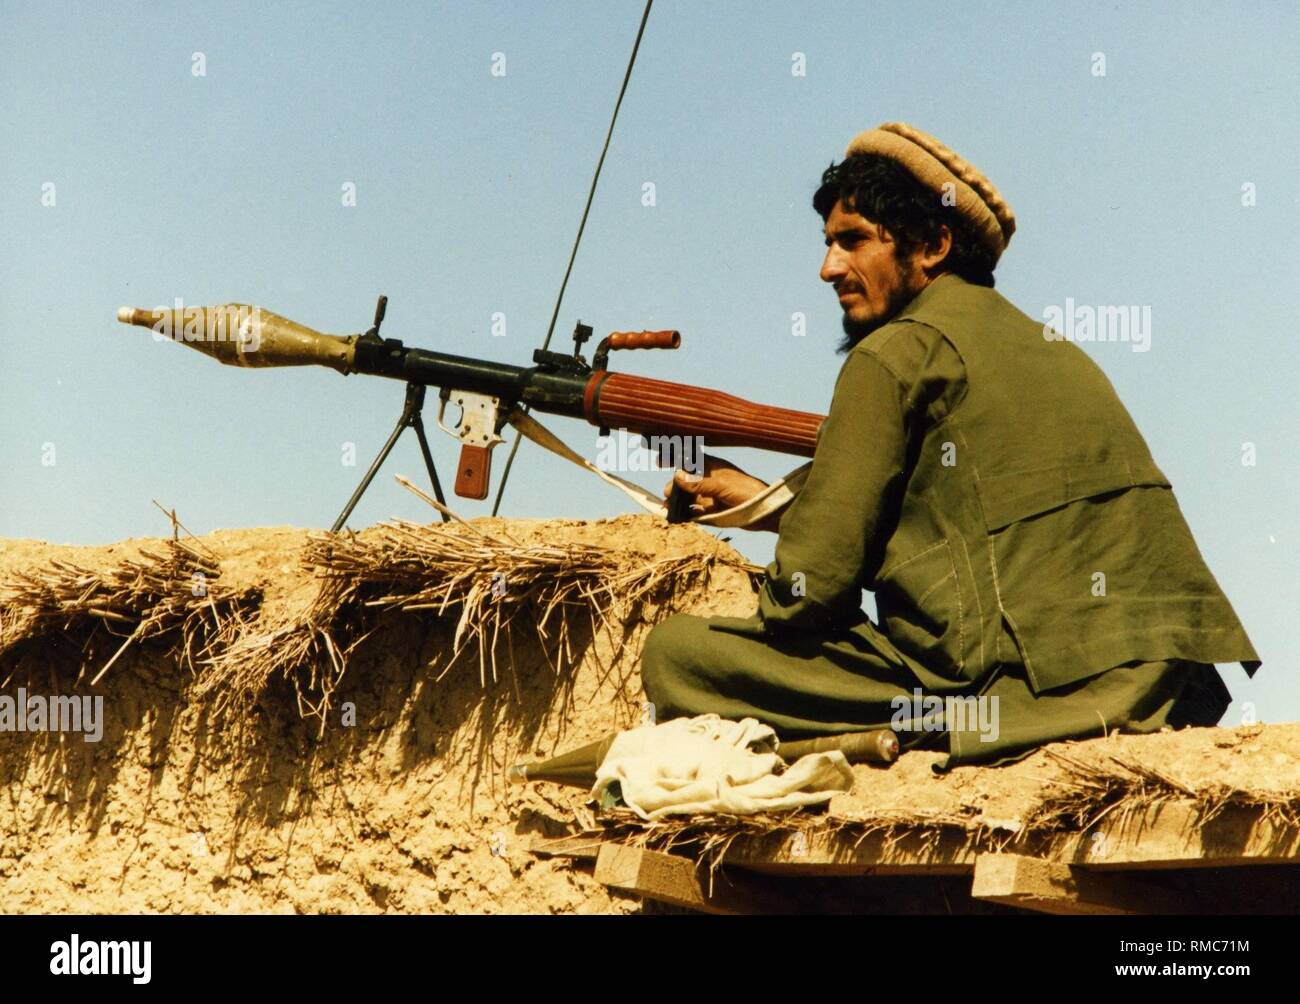 Un combattente afghano è custodire un magazzino sul territorio pakistano con un RPG-7 bazooka. I mujahedeen attraversano il confine per il resto in campi profughi pakistani e attrezzare per la lotta contro le truppe sovietiche. Nei campi profughi ulteriori volontari vengono reclutati. Foto Stock